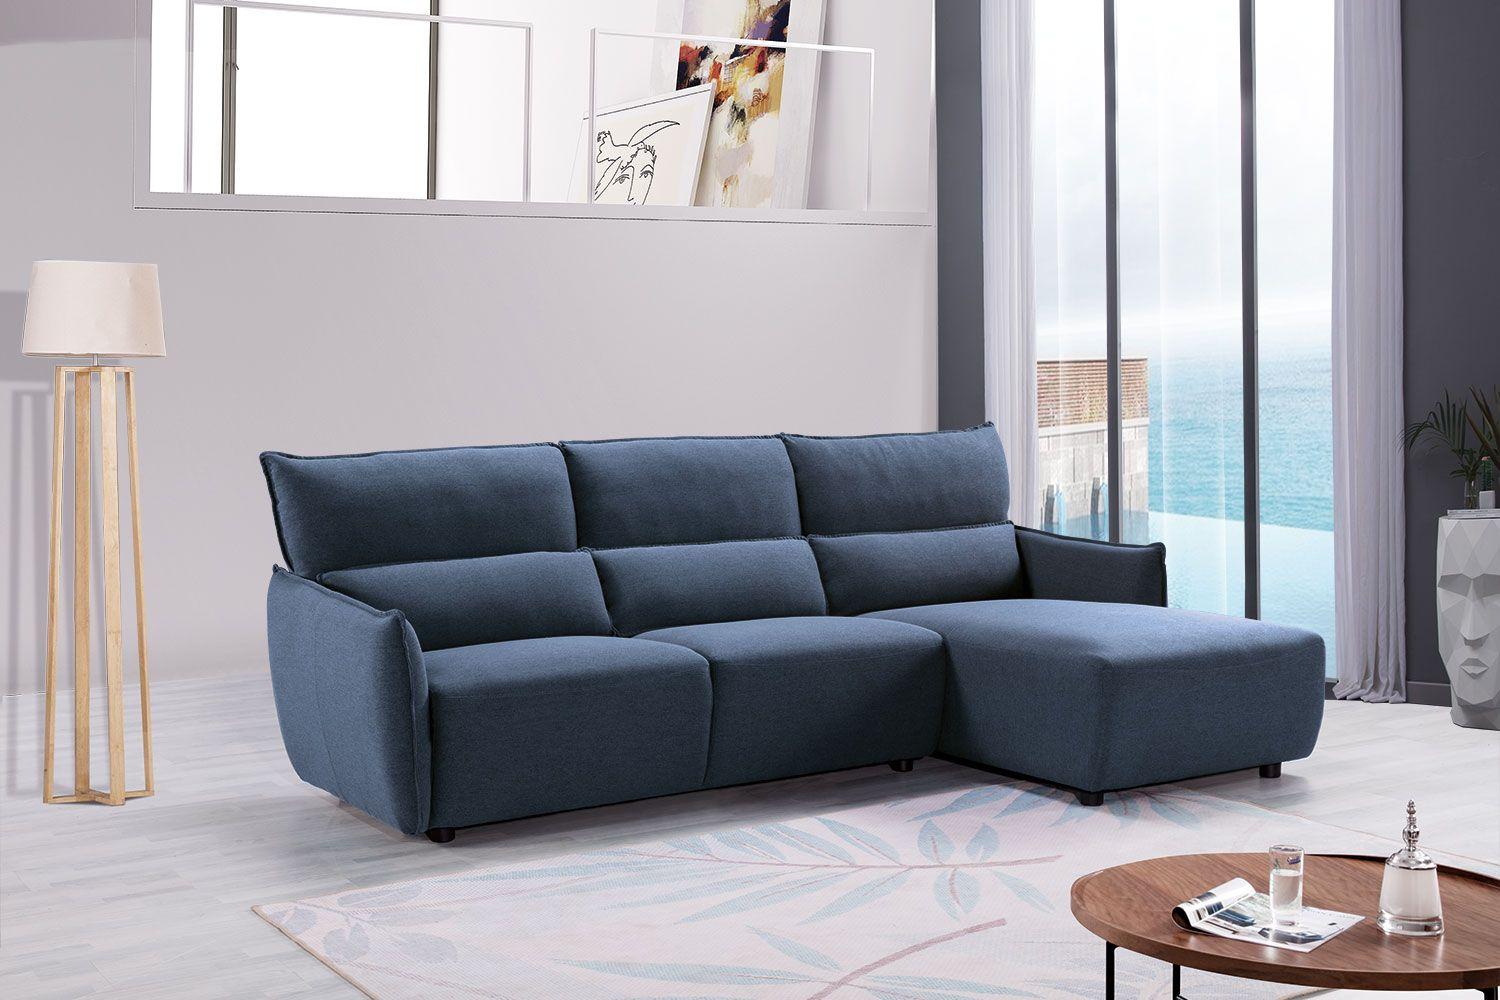 

    
American Eagle Furniture AE-L550L Sectional Sofa Blue AE-L550L
